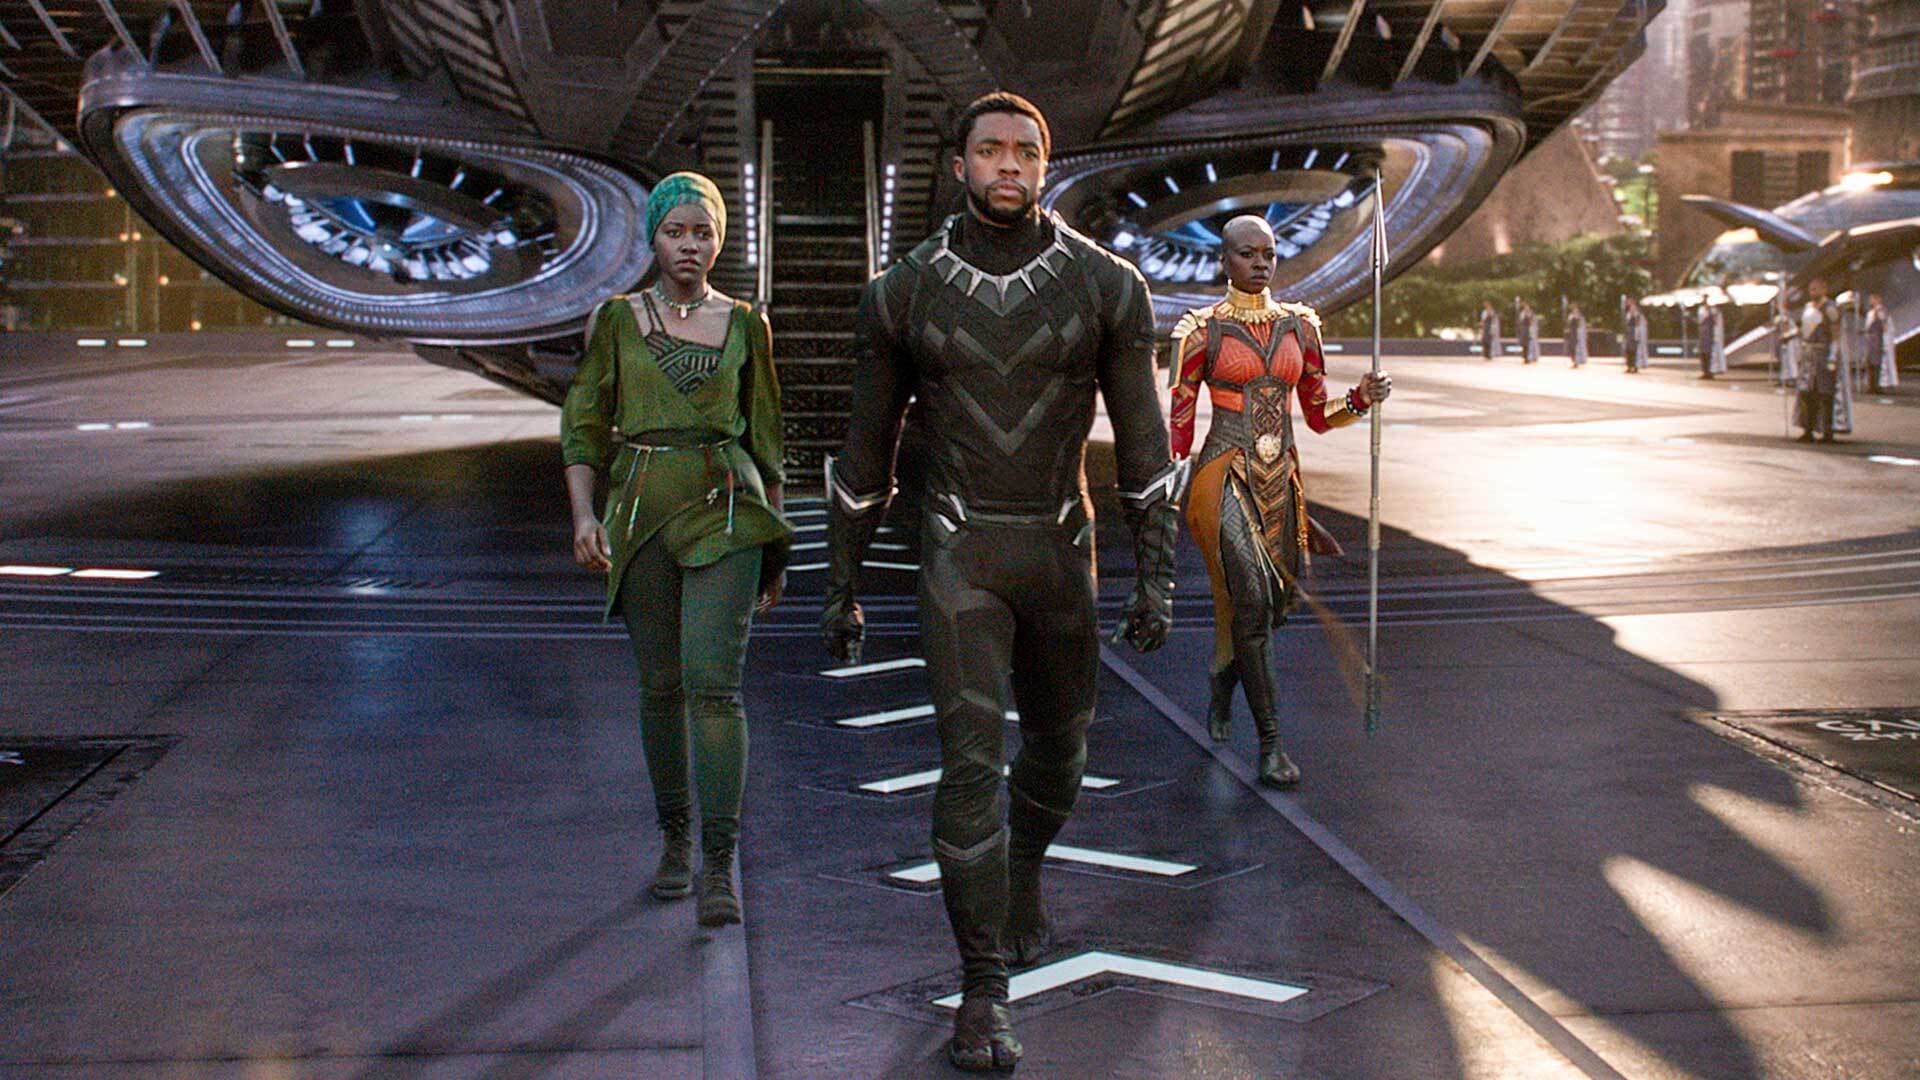 Nakia (Lupita Nyong'o), T'Challa/Black Panther (Chadwick Boseman) and Okoye (Danai Gurira) walk in "Black Panther"